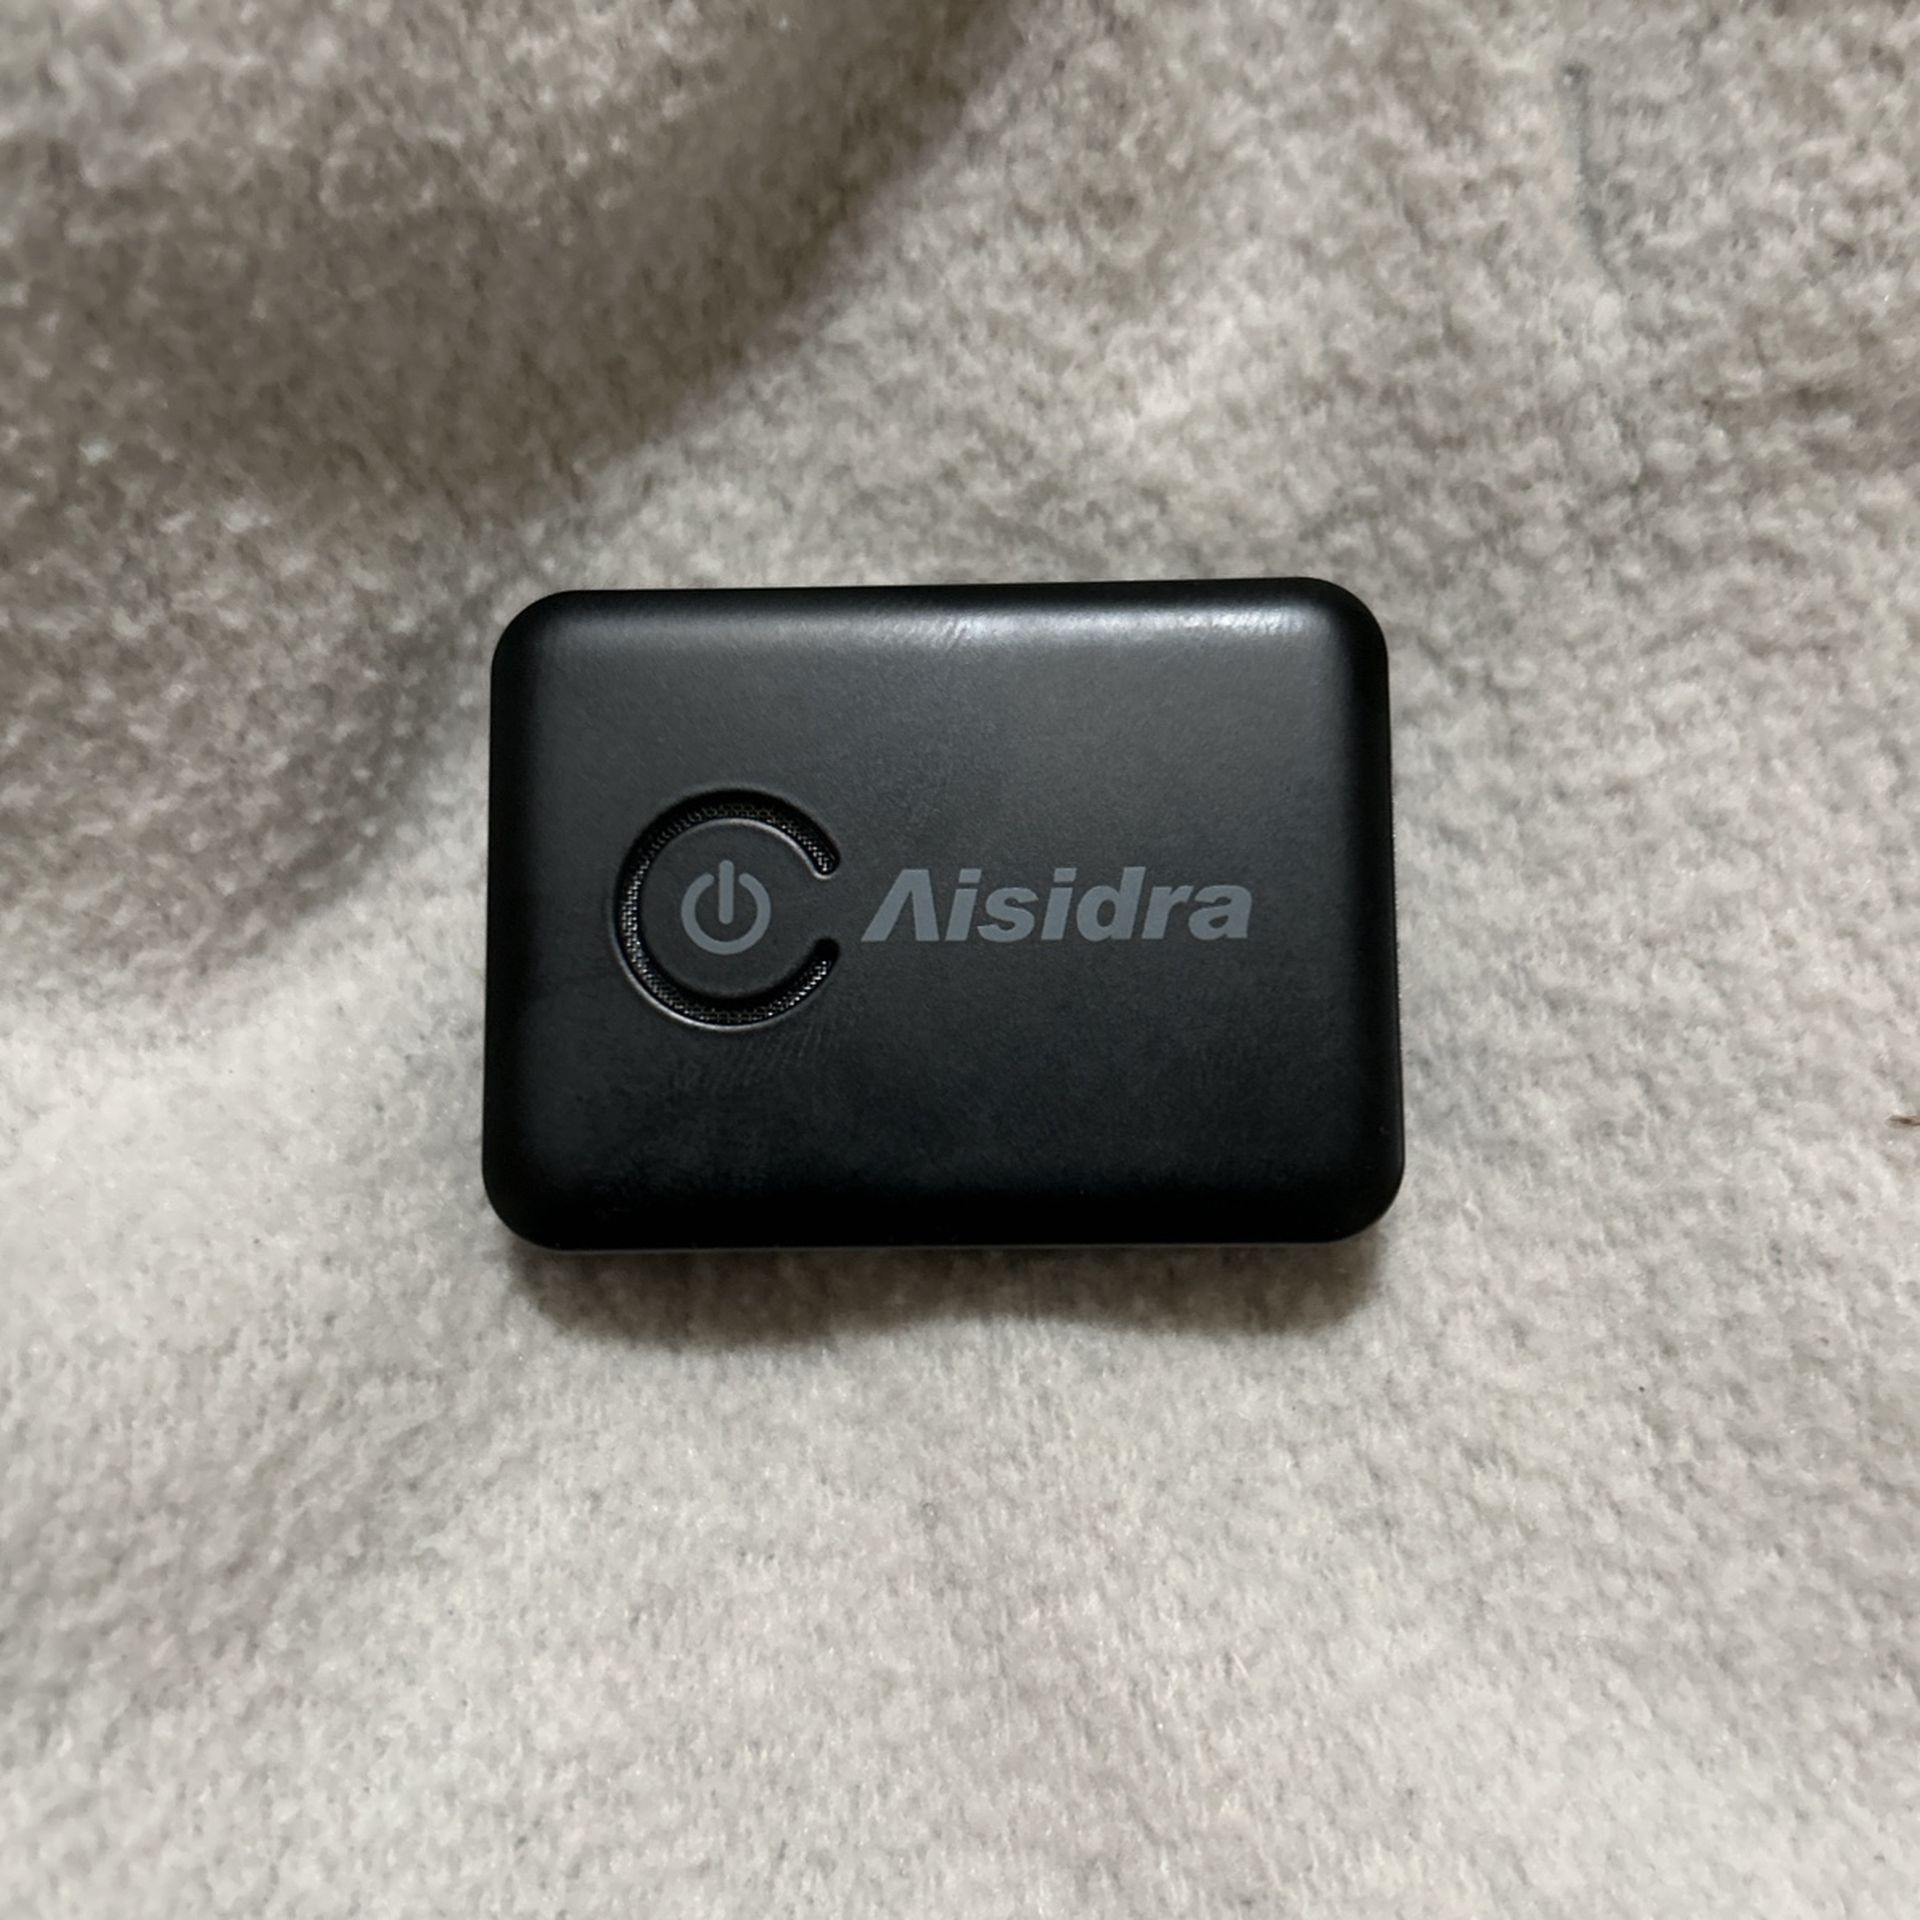 Aisidra Bluetooth Transmitter Receiver